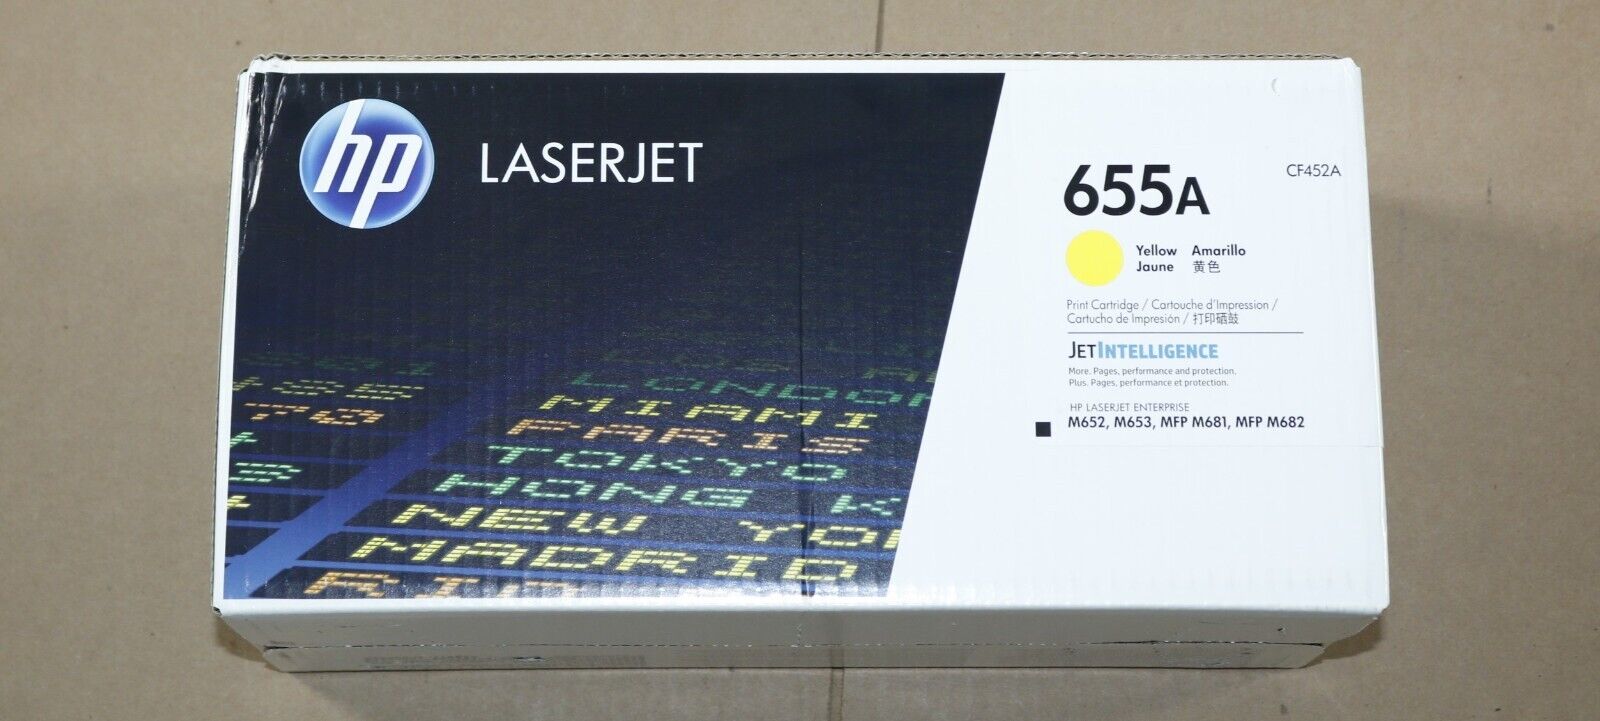 New OEM HP 655A LaserJet M652, M653, M681, M682 Yellow Print Cartridge CF452A